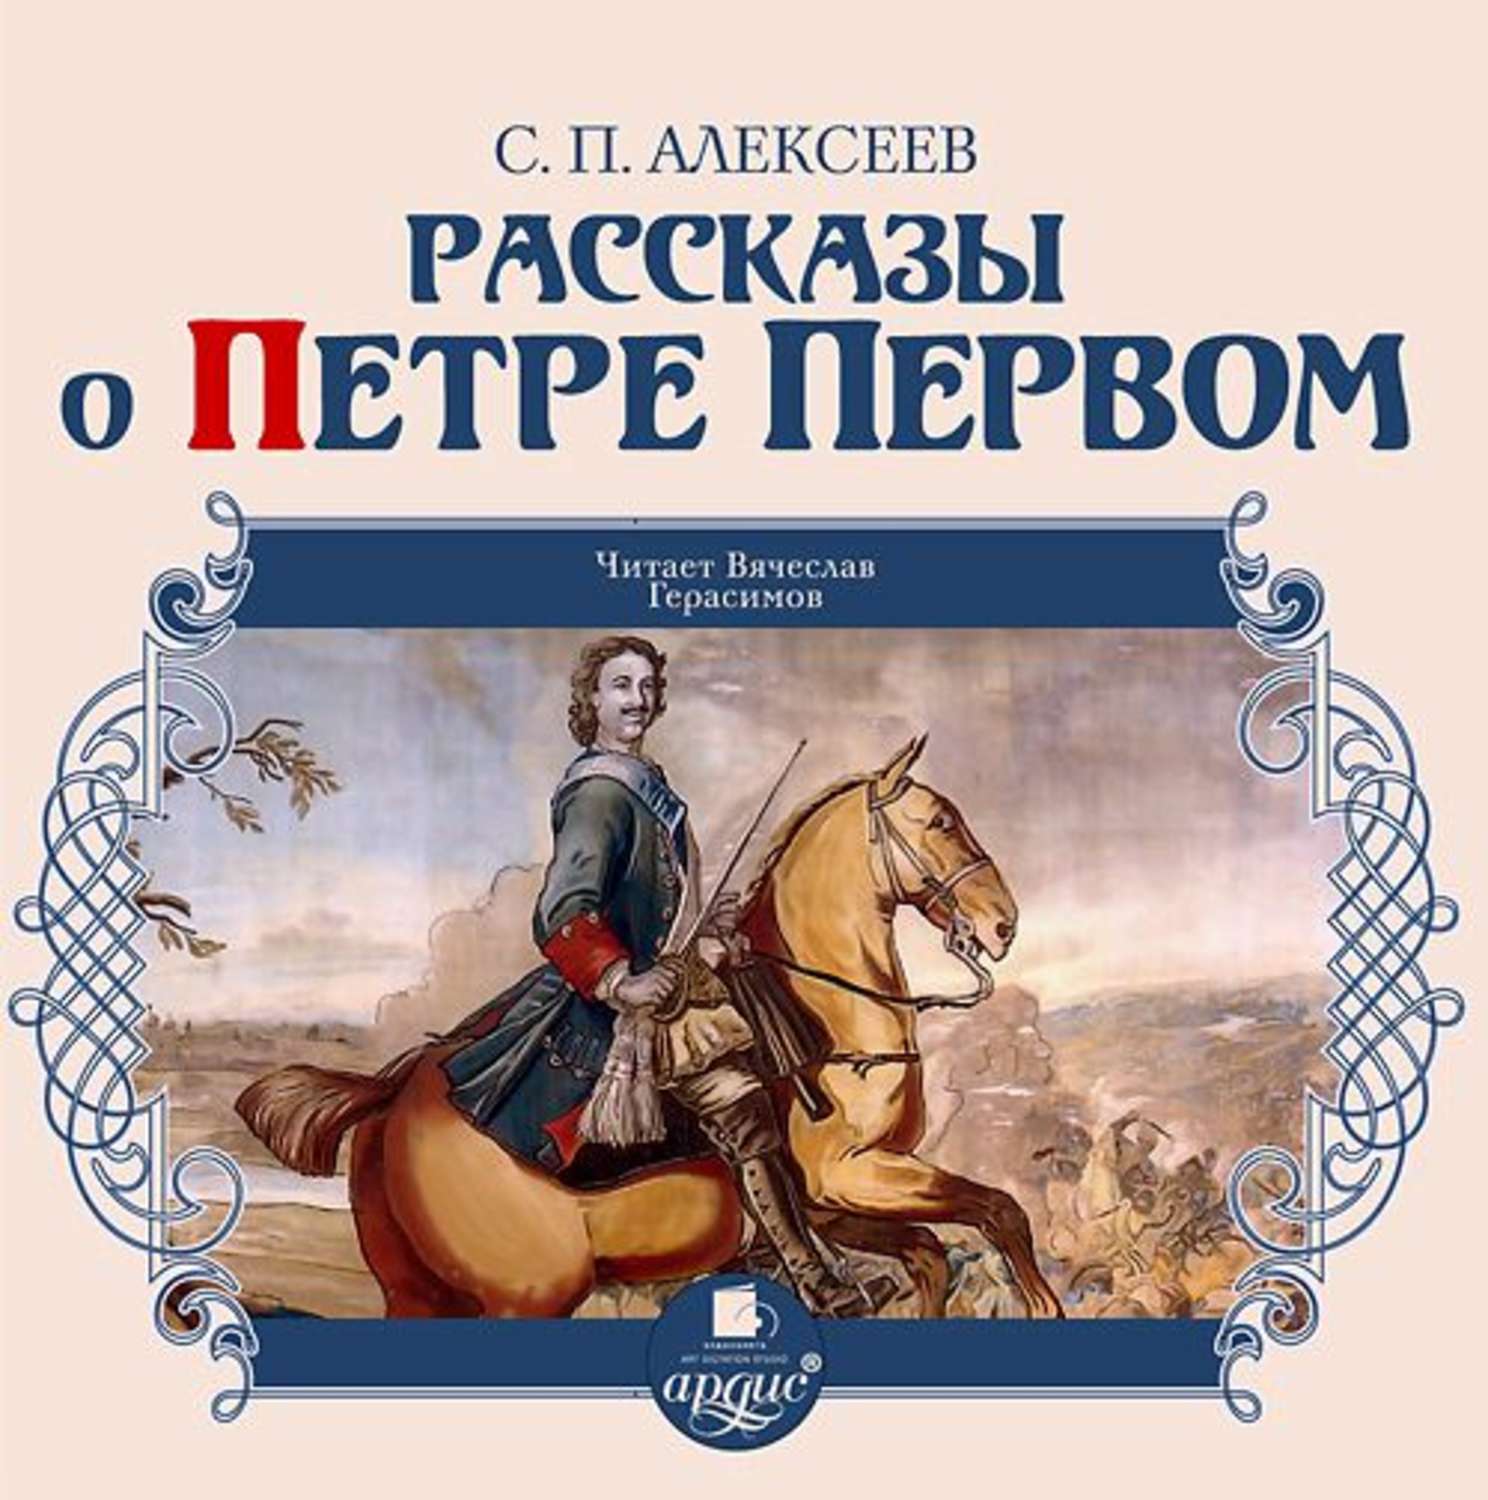 Первый том 1 слушать. Книги о Петре первом Алексеева для детей.